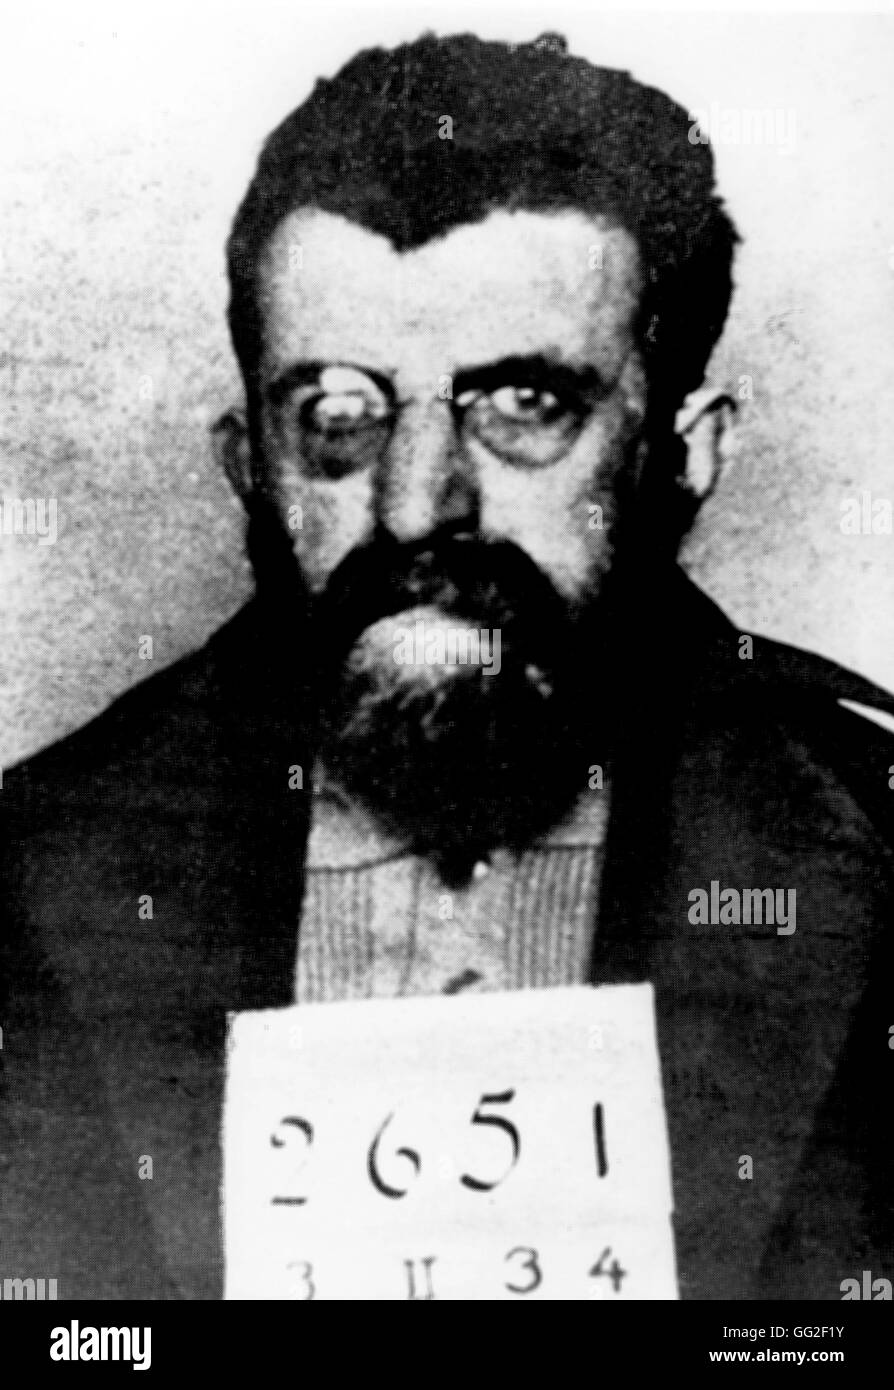 Imagen de policía anti-fascista escritor Erich Mühsam durante su encarcelamiento en el campamento Orianemburg, pocos meses antes de su asesinato, en la noche de los cuchillos largos, 30 de junio de 1934 Siglo XX Alemania Paris - BIDC Foto de stock